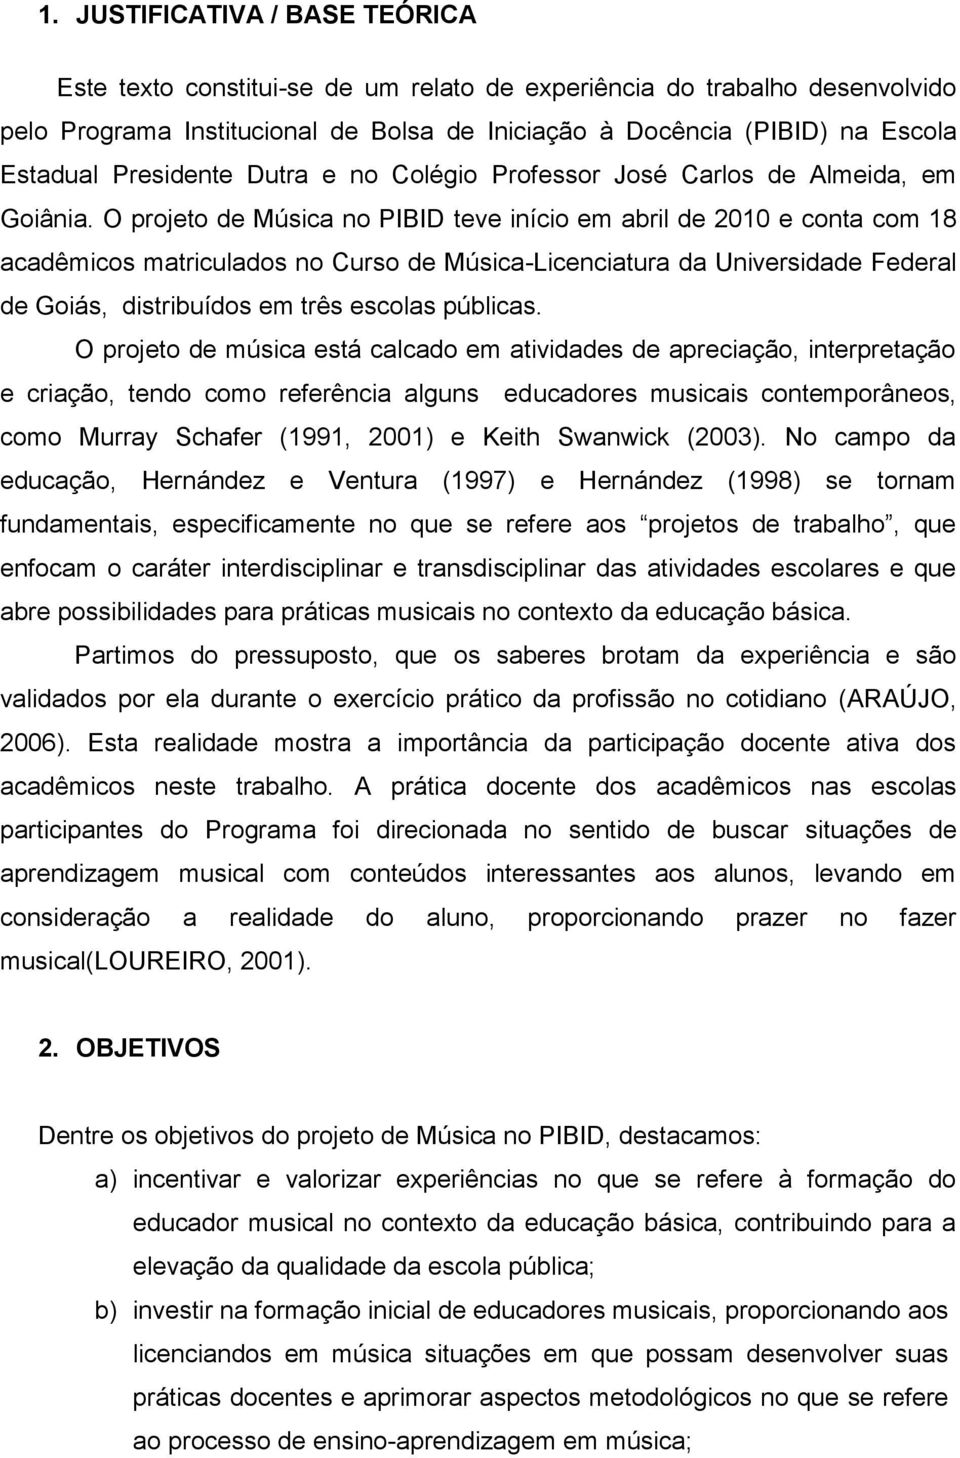 O projeto de Música no PIBID teve início em abril de 2010 e conta com 18 acadêmicos matriculados no Curso de Música-Licenciatura da Universidade Federal de Goiás, distribuídos em três escolas